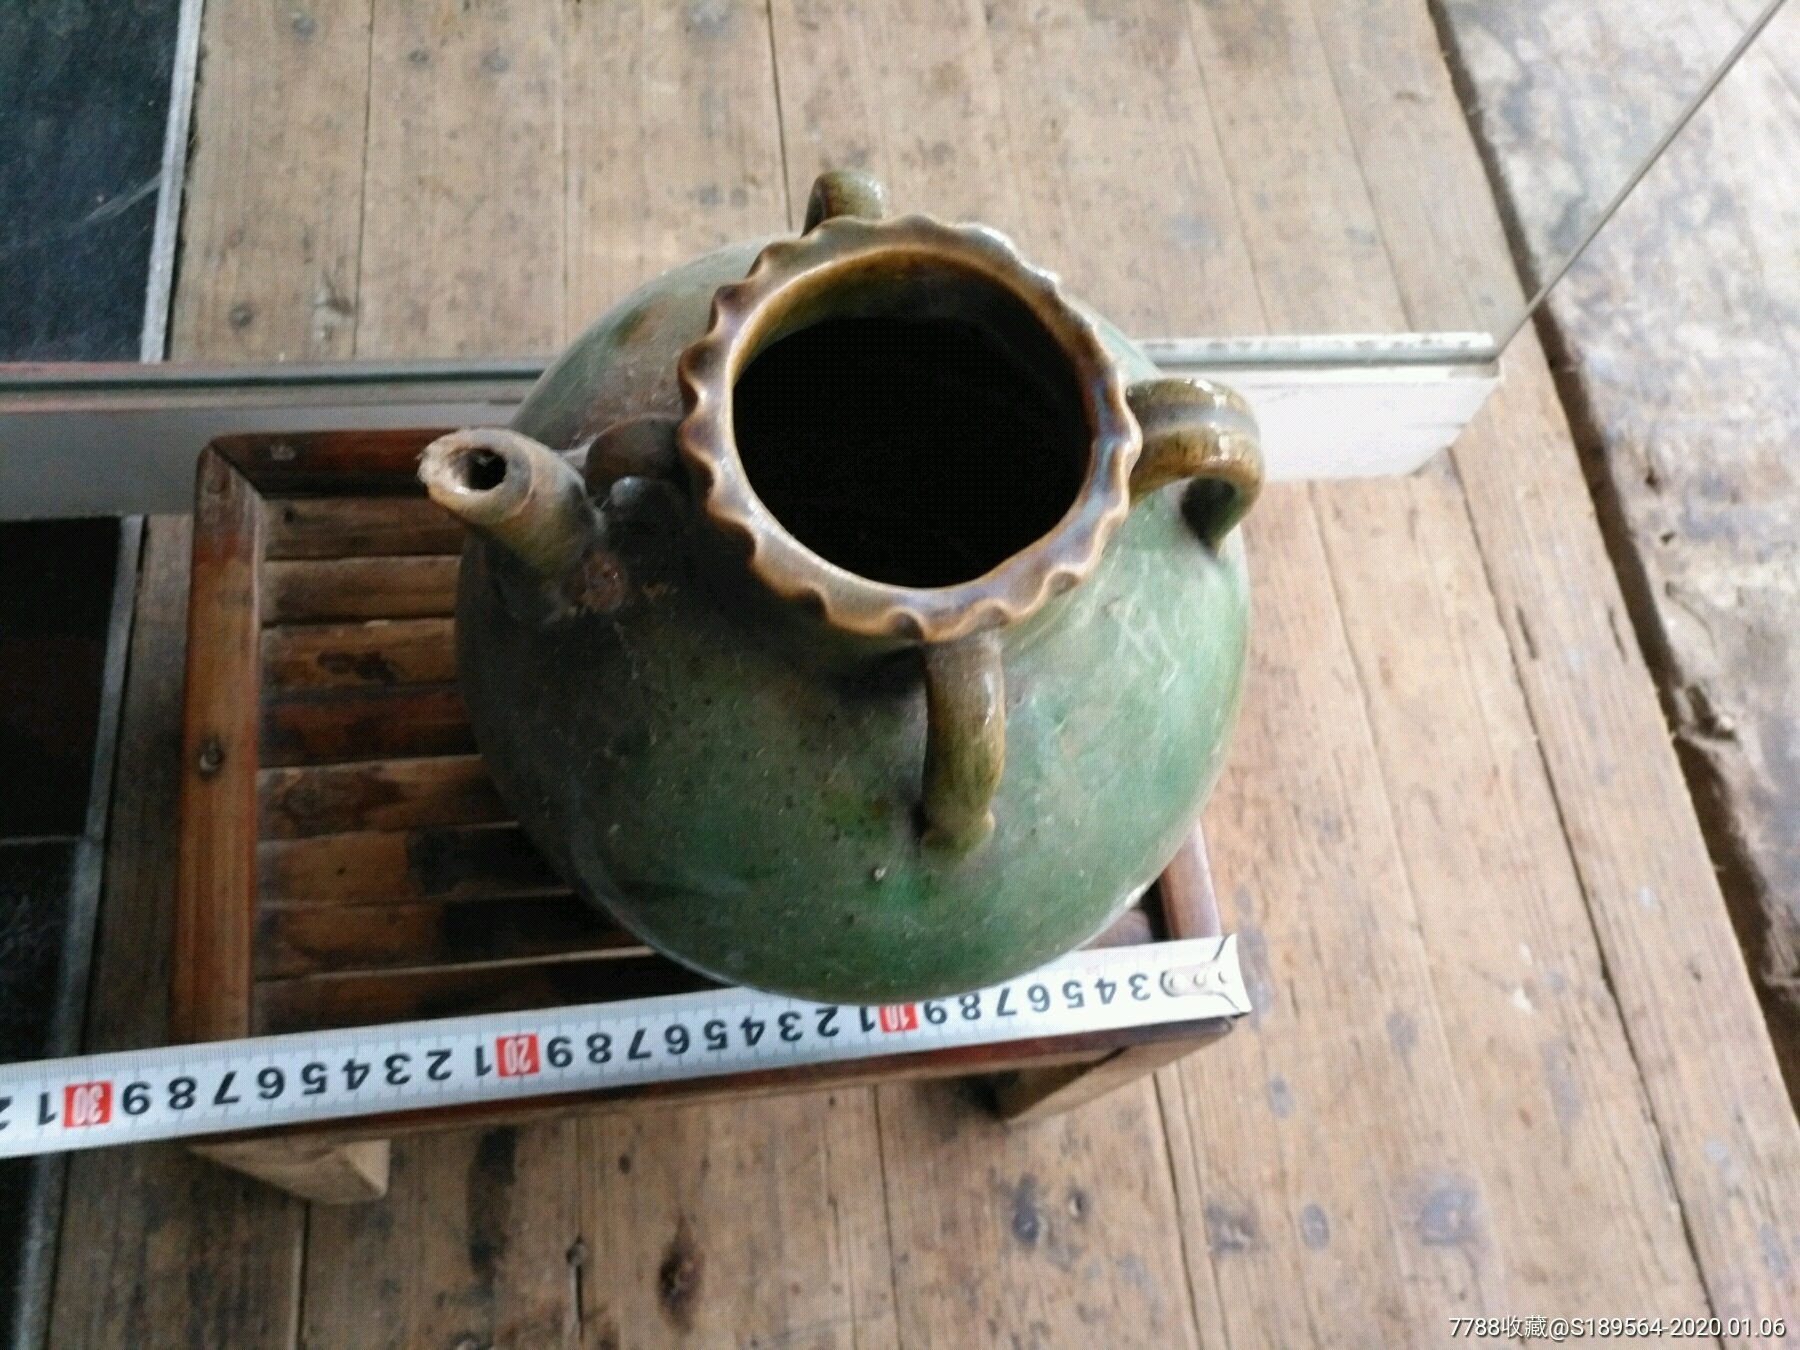 铜官窑绿釉茶壶图片